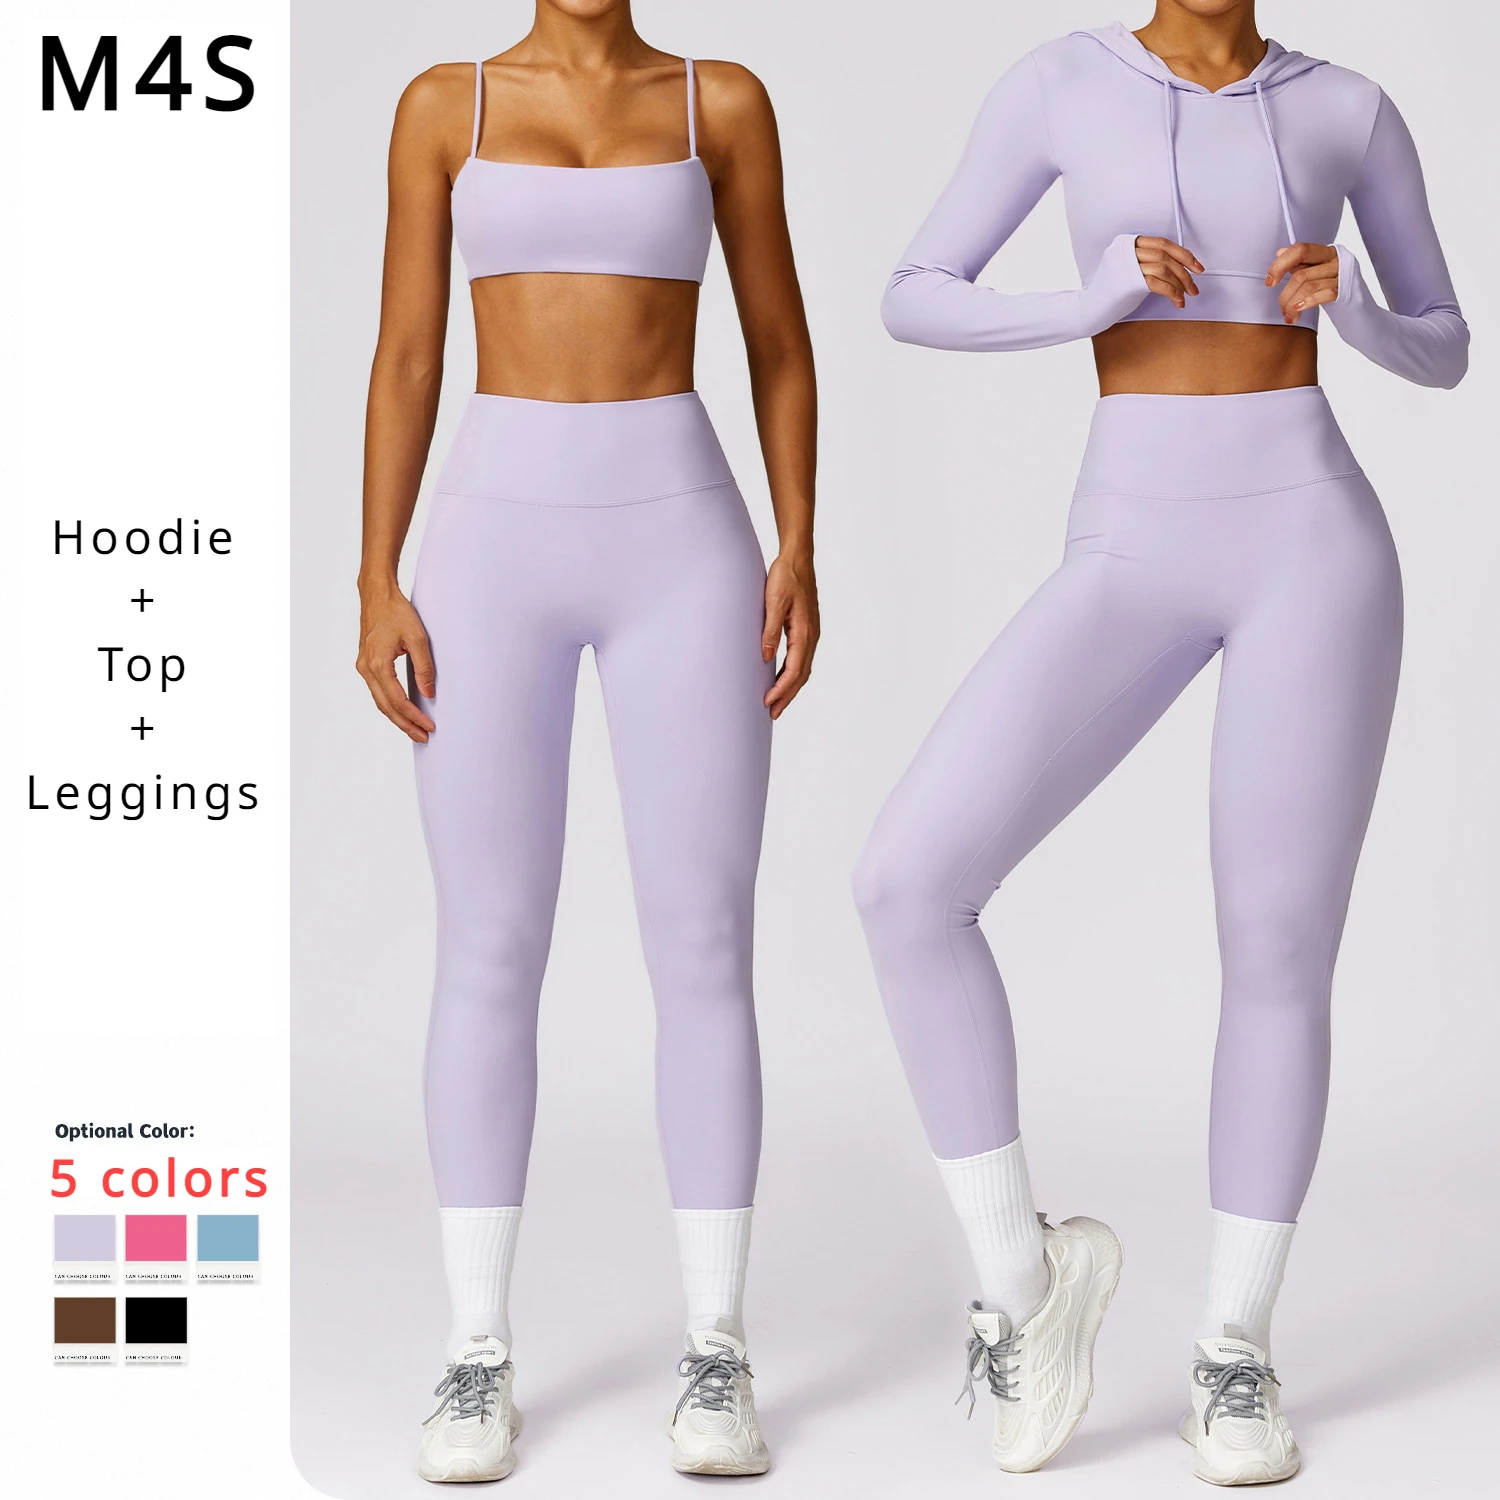 Spandex Naylon egzersiz kıyafetleri Kadınlar için 2 Adet Egzersiz Seti Yoga Seti Tayt Kadın Spor Salonu Spor Eşofman Spor Takım Elbise Hoodie